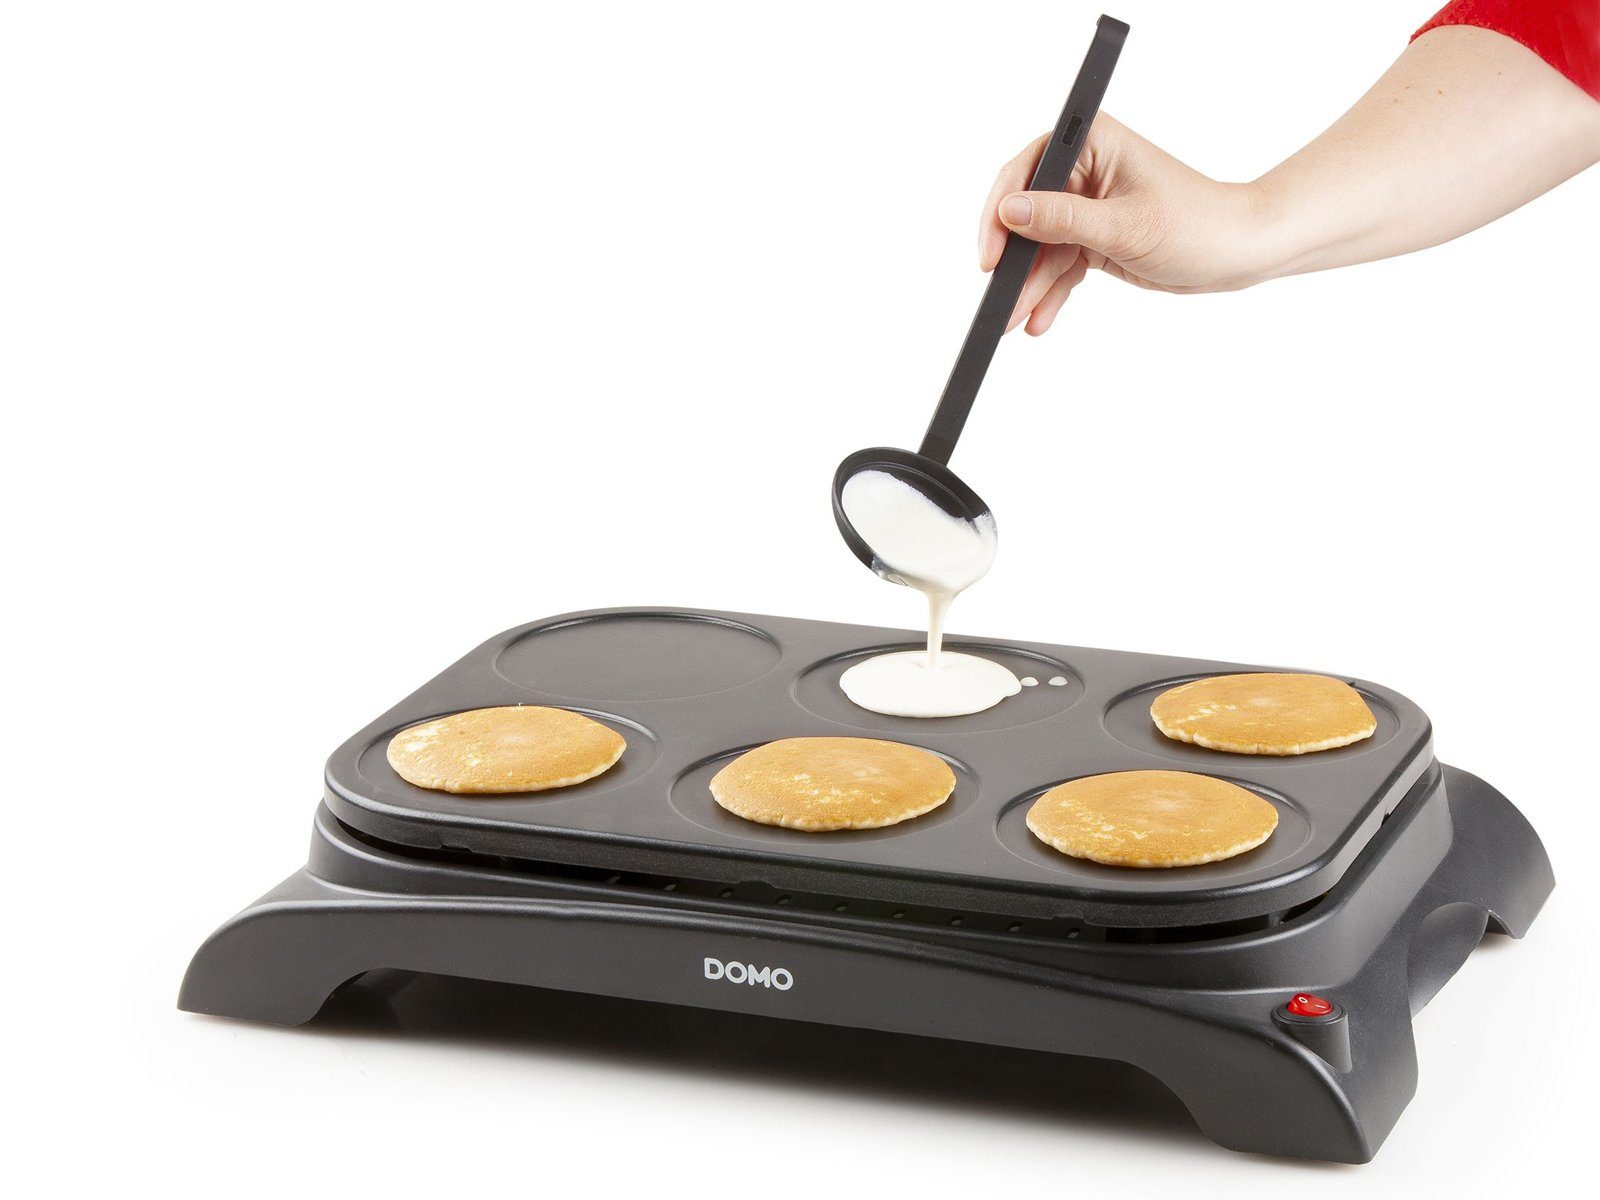 Domo Crêpesmaker, W, machen Crepes-Eisen Pfannkuchen Ø Creperie süße Pancake selber cm, 1000 11.5 6 salzige